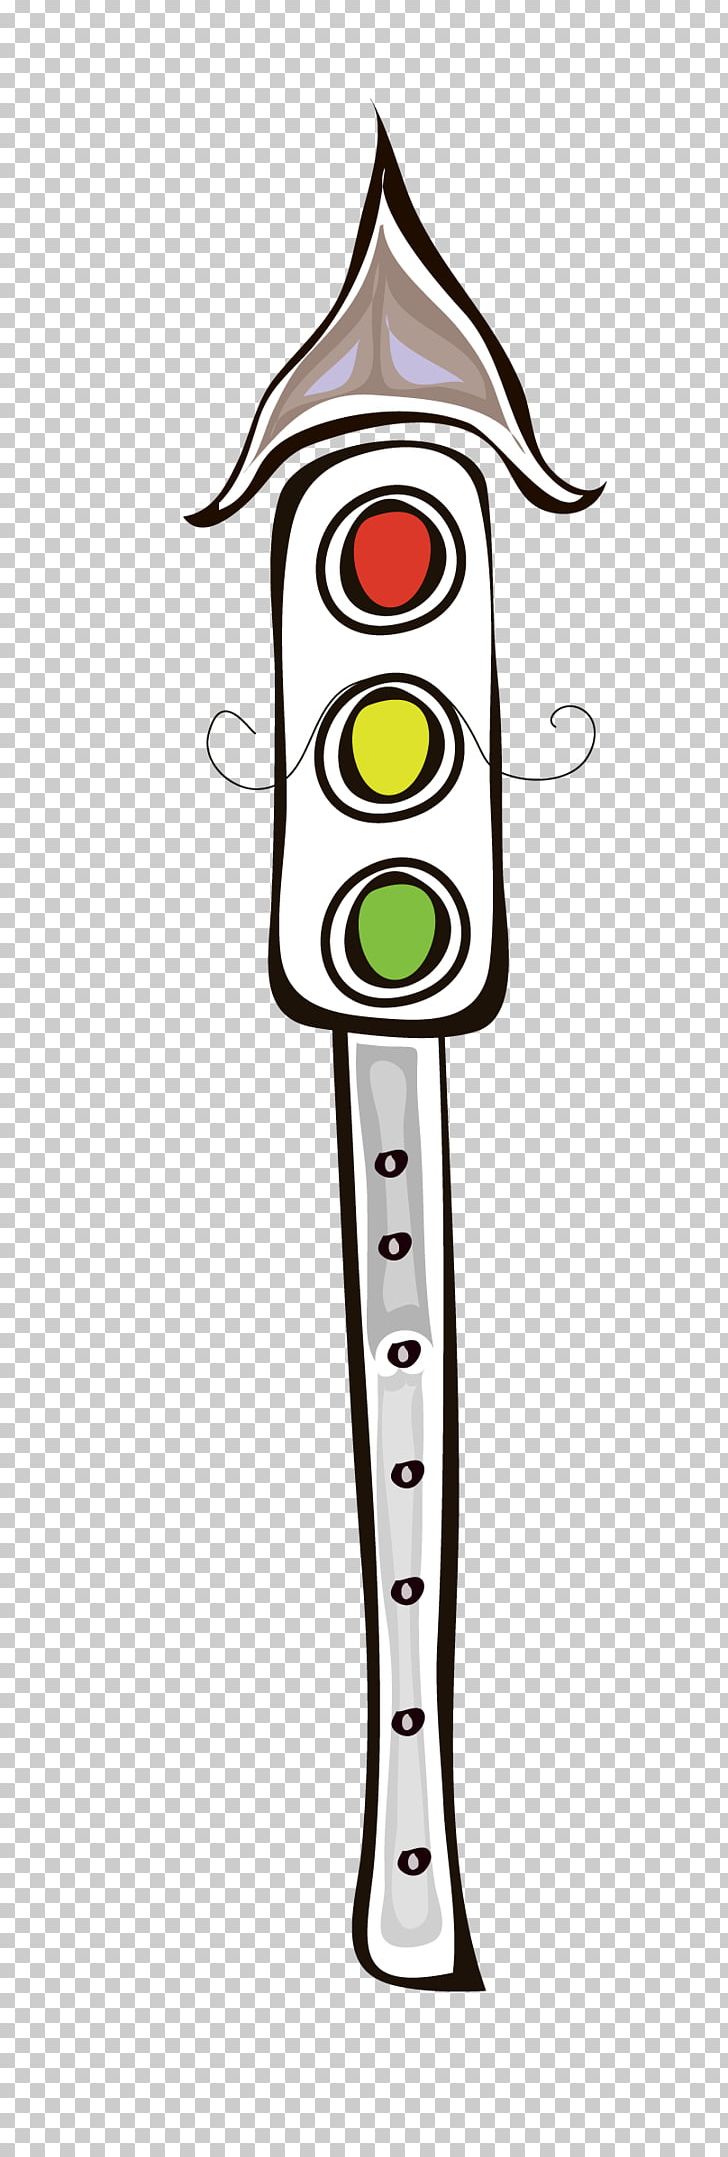 Sketch Traffic Lights Stock Illustrations  278 Sketch Traffic Lights Stock  Illustrations Vectors  Clipart  Dreamstime